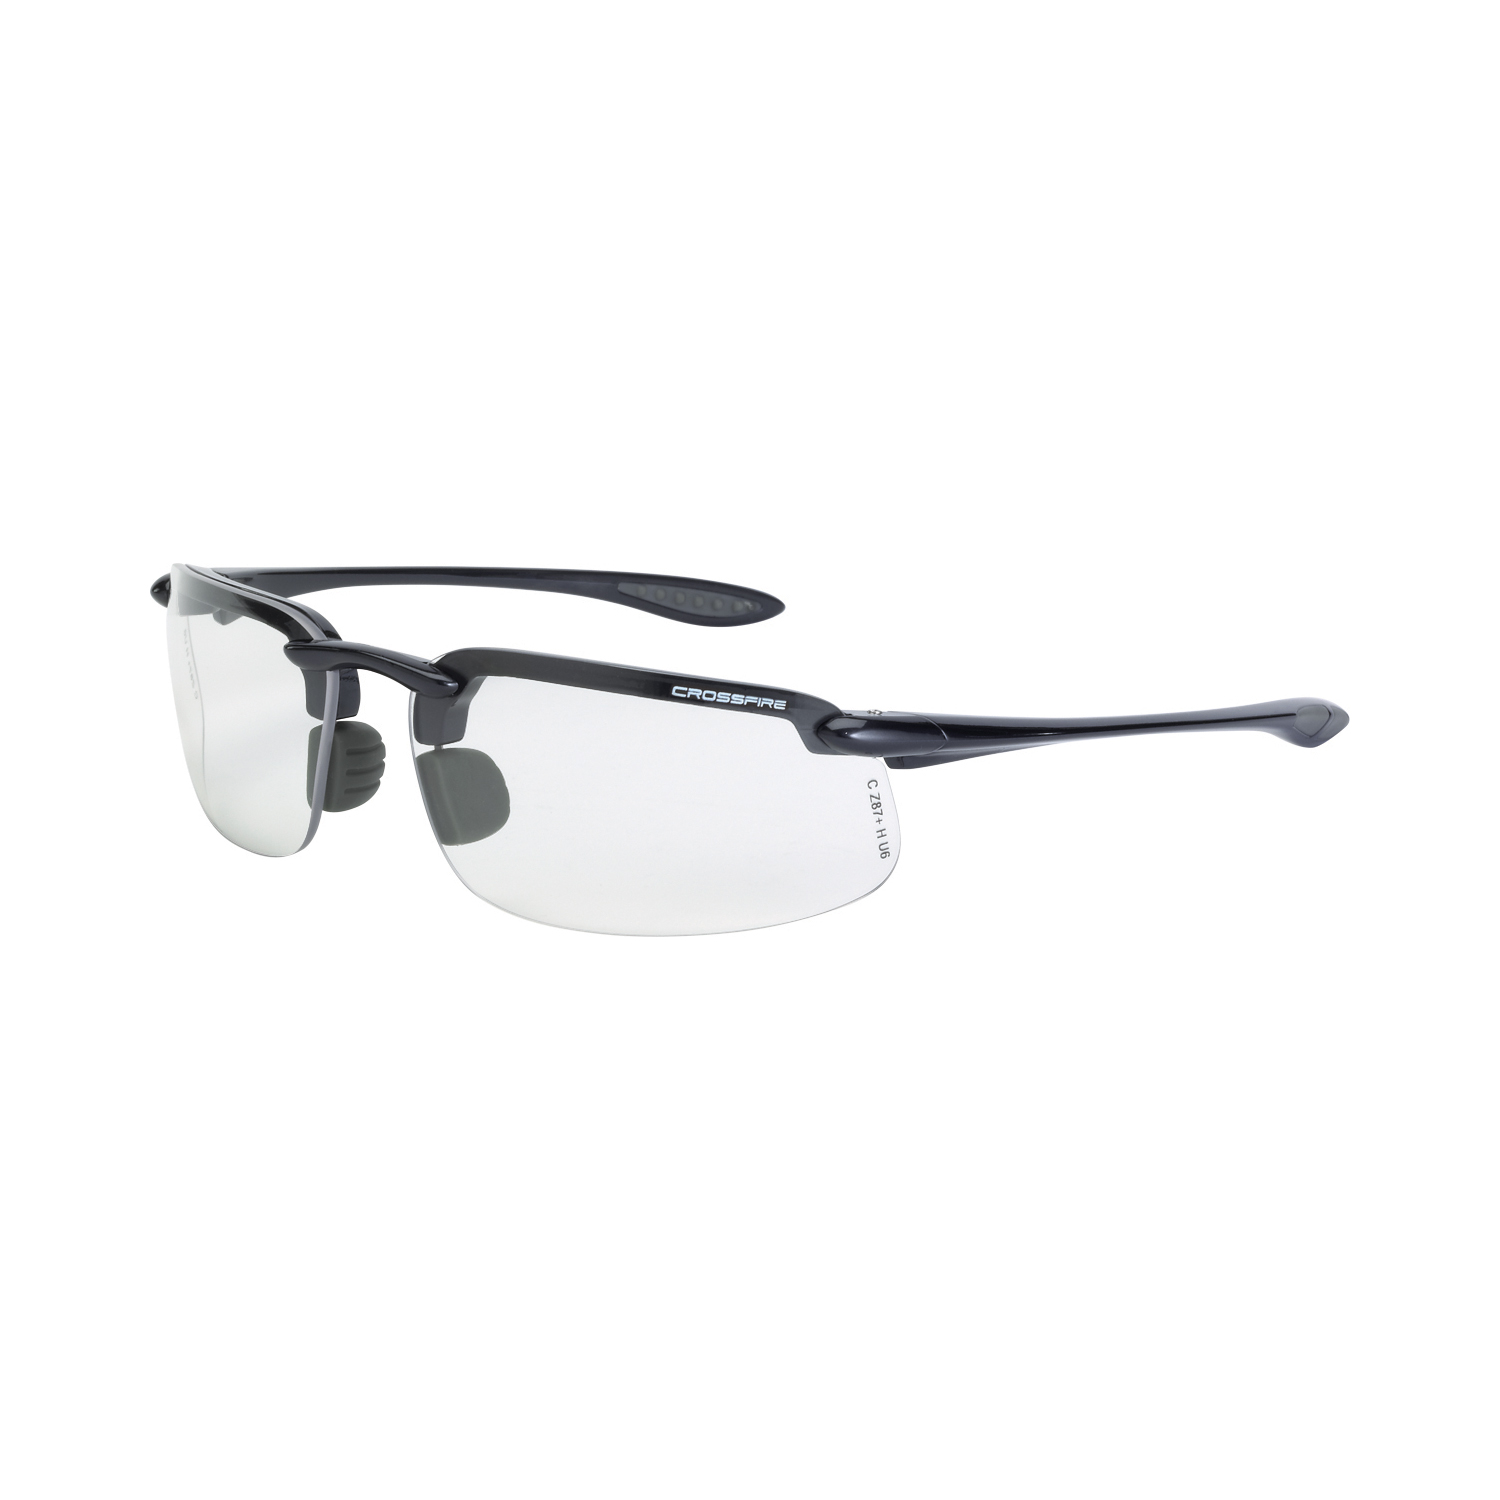 Crossfire ES4 Safety Glasses Crystal Black Frame Smoke Lens ANSI Z87 